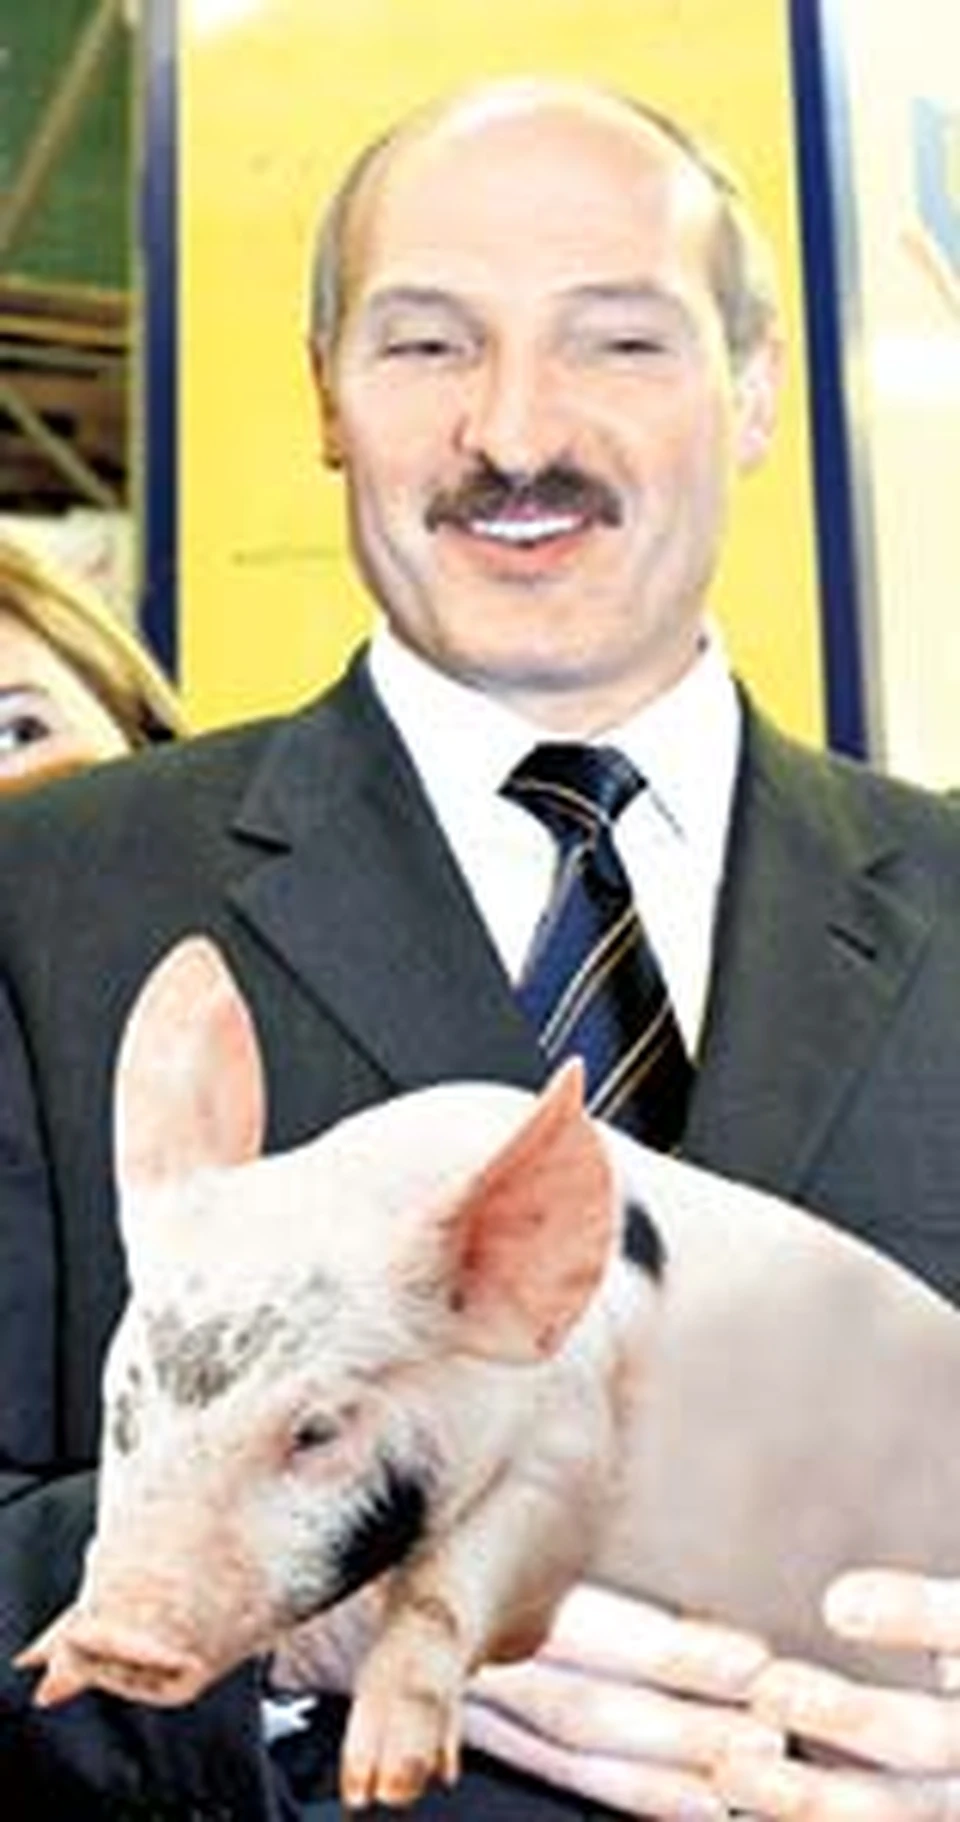 Александр Лукашенко умеет подложить свинью. А пусть не суются!